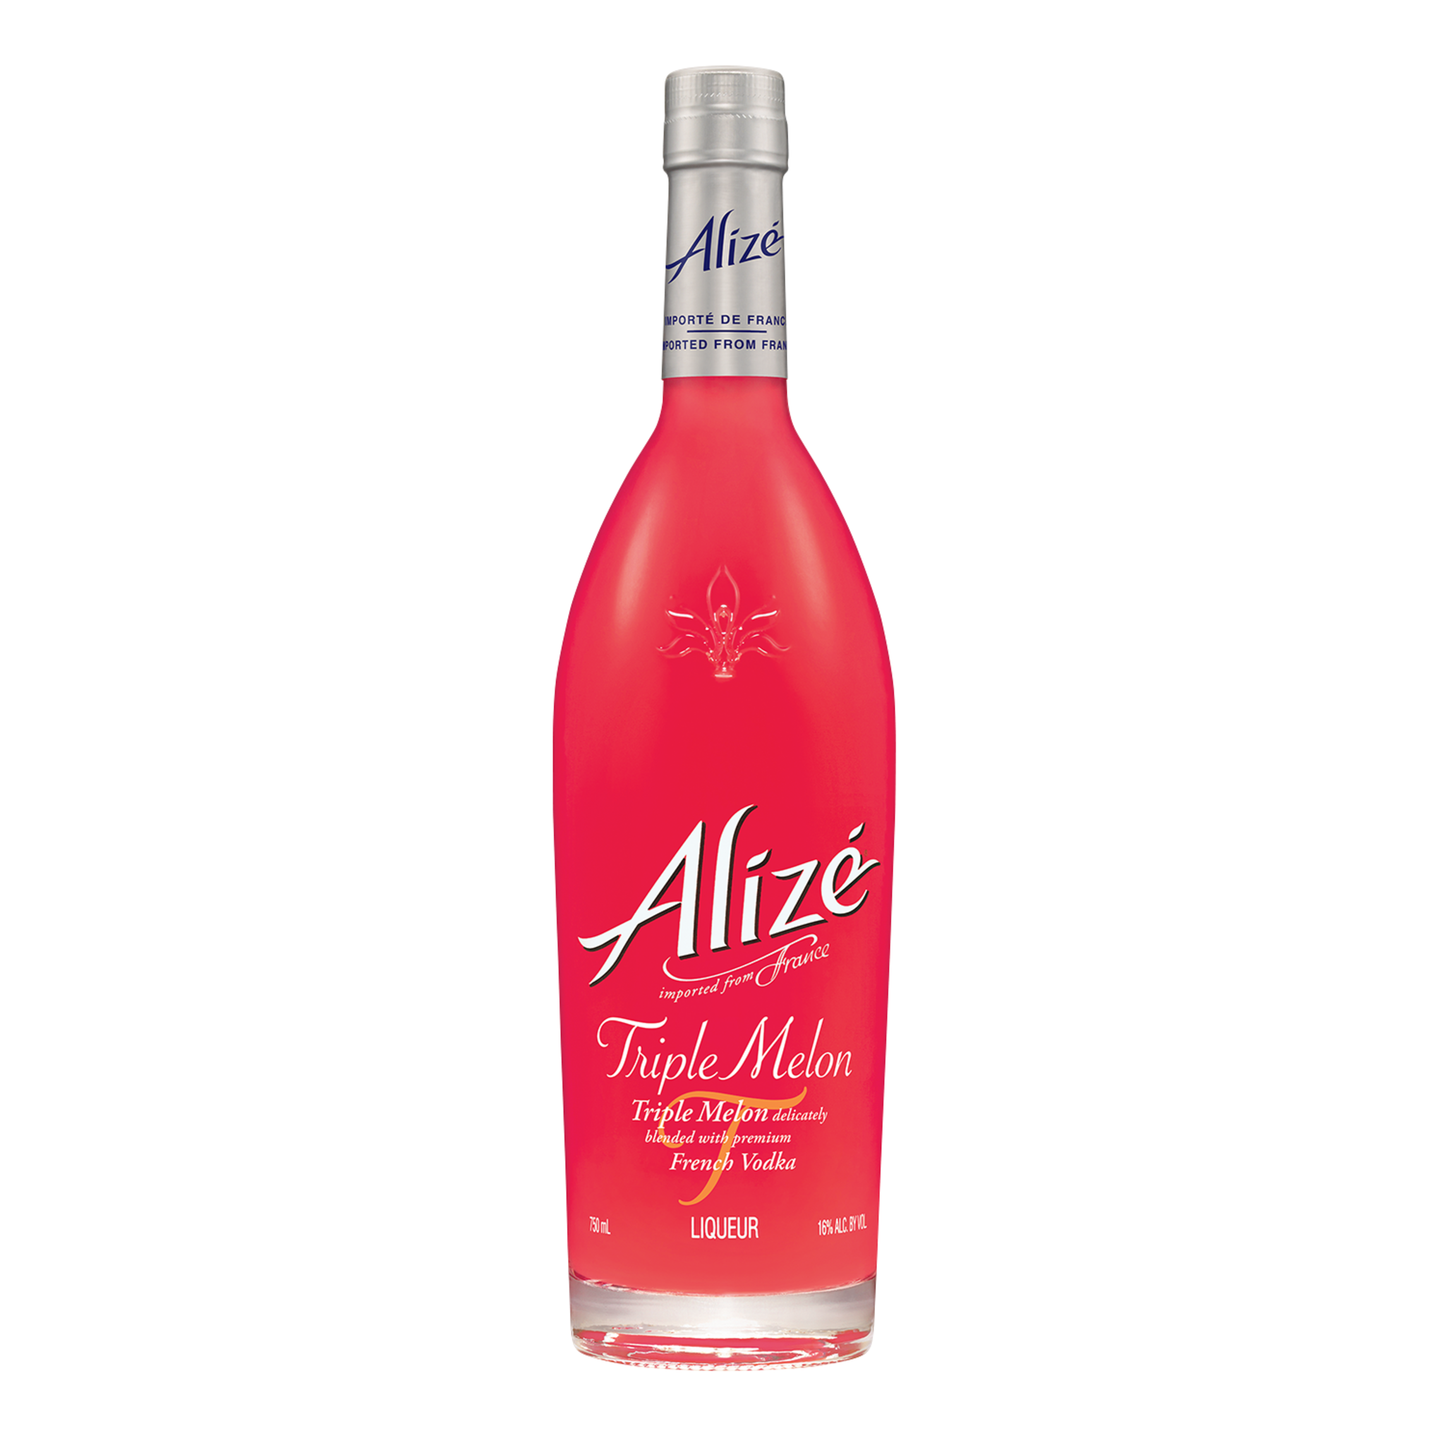 Alize Triple Melon - Liquor Geeks